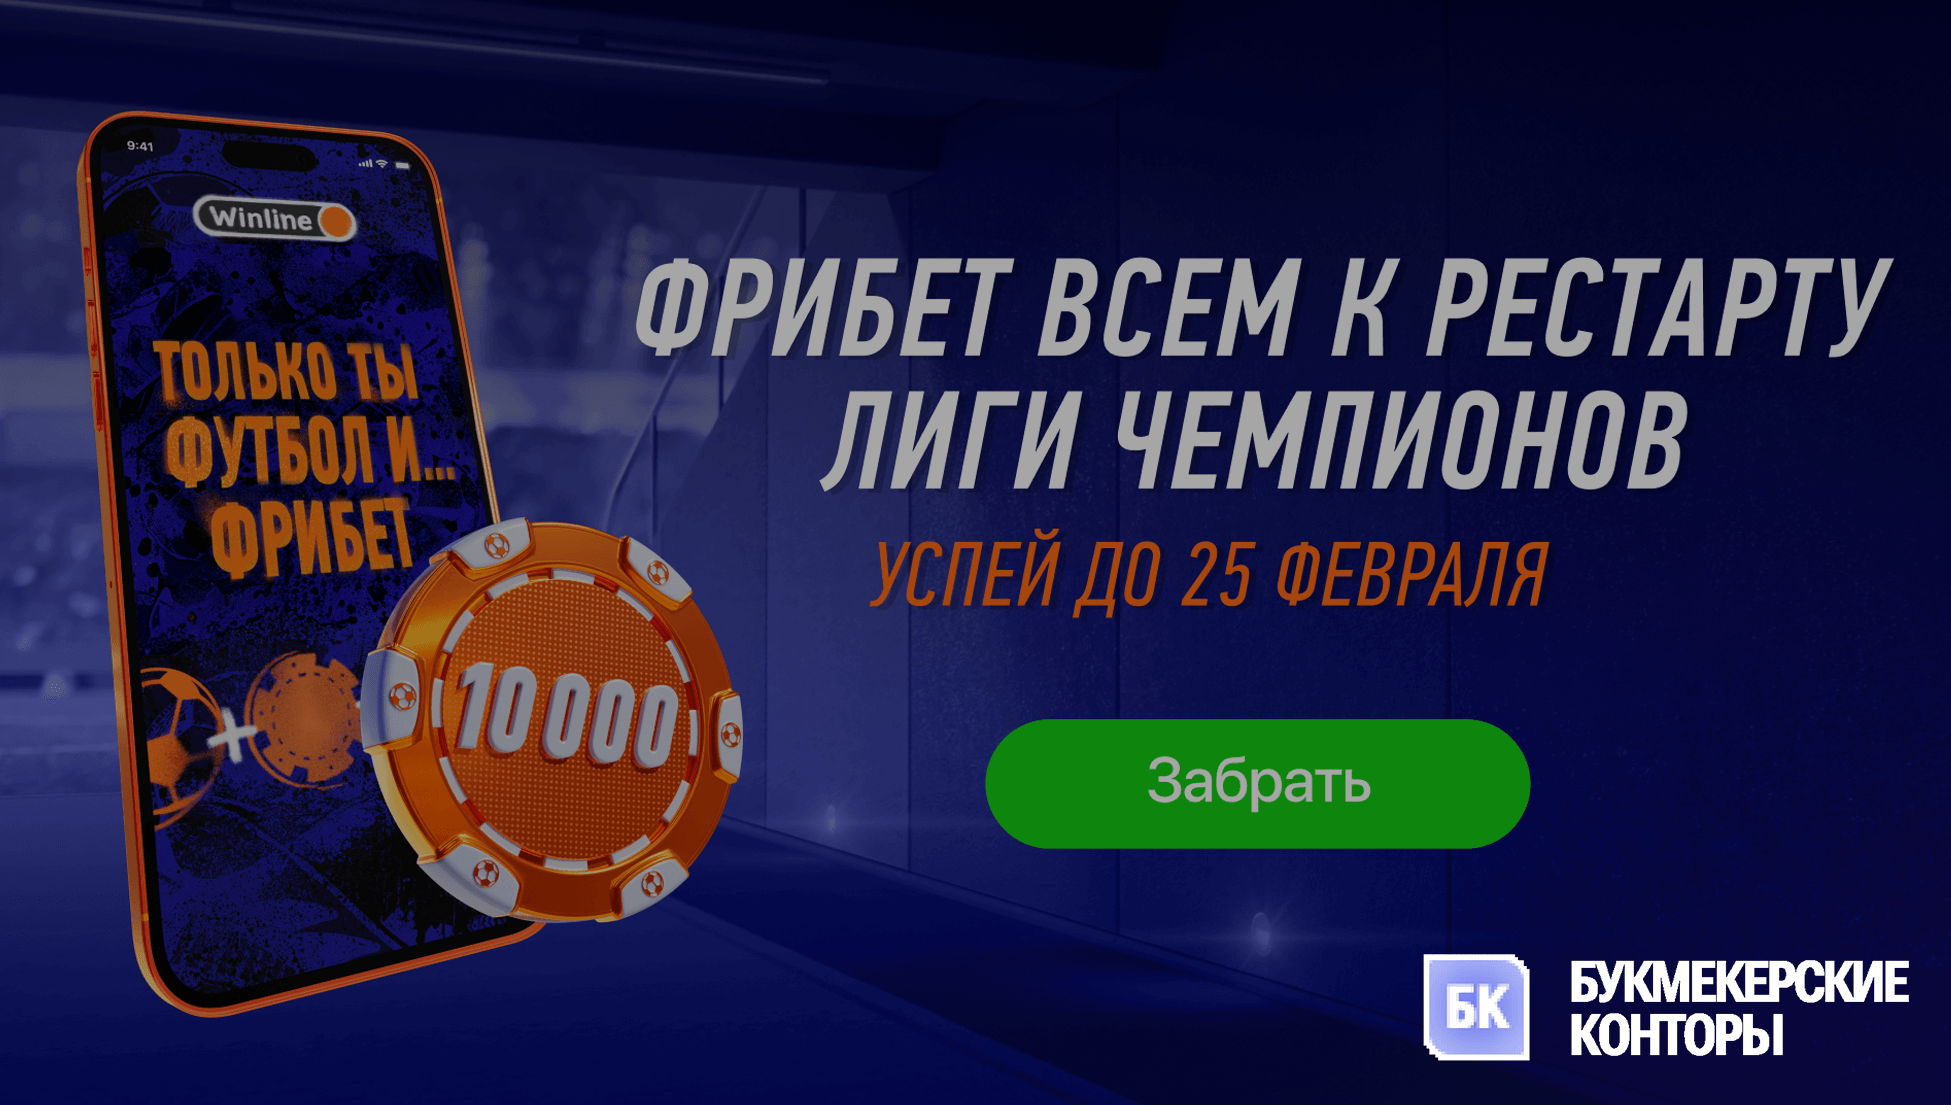 Winline радует ВСЕХ игроков фрибетами до 10 000 рублей